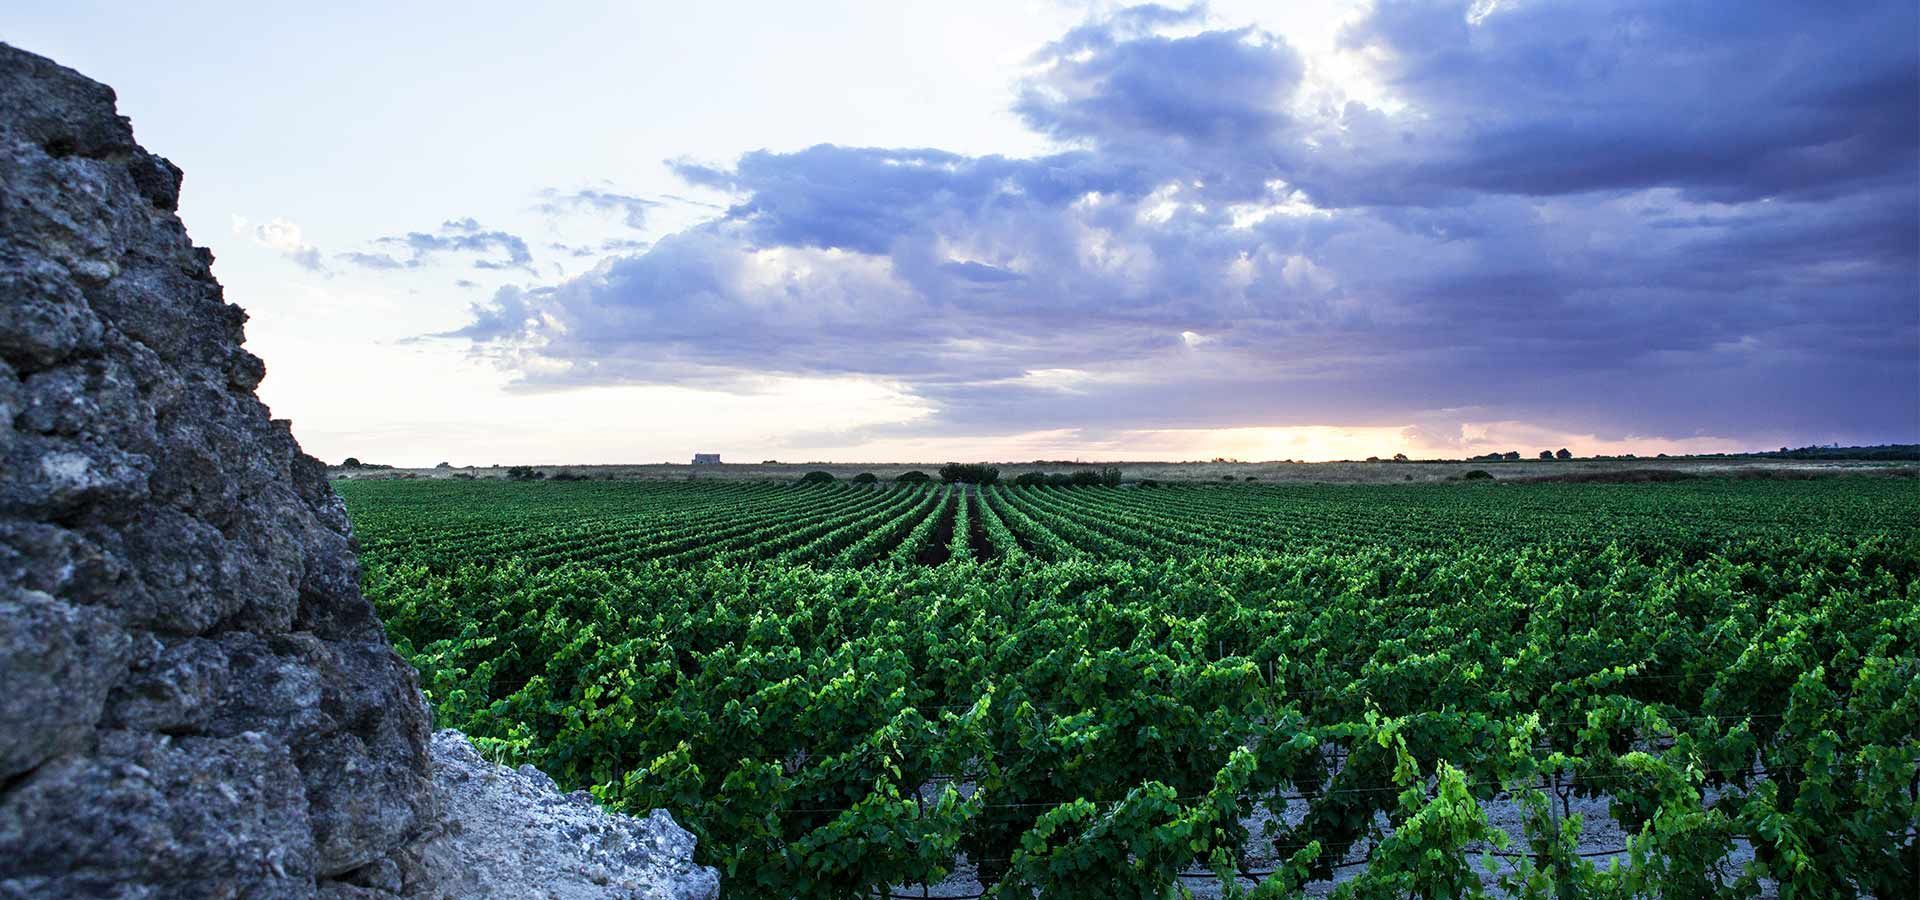 Weingut Produttori Vini “Maestri in Primitivo”, Manduria